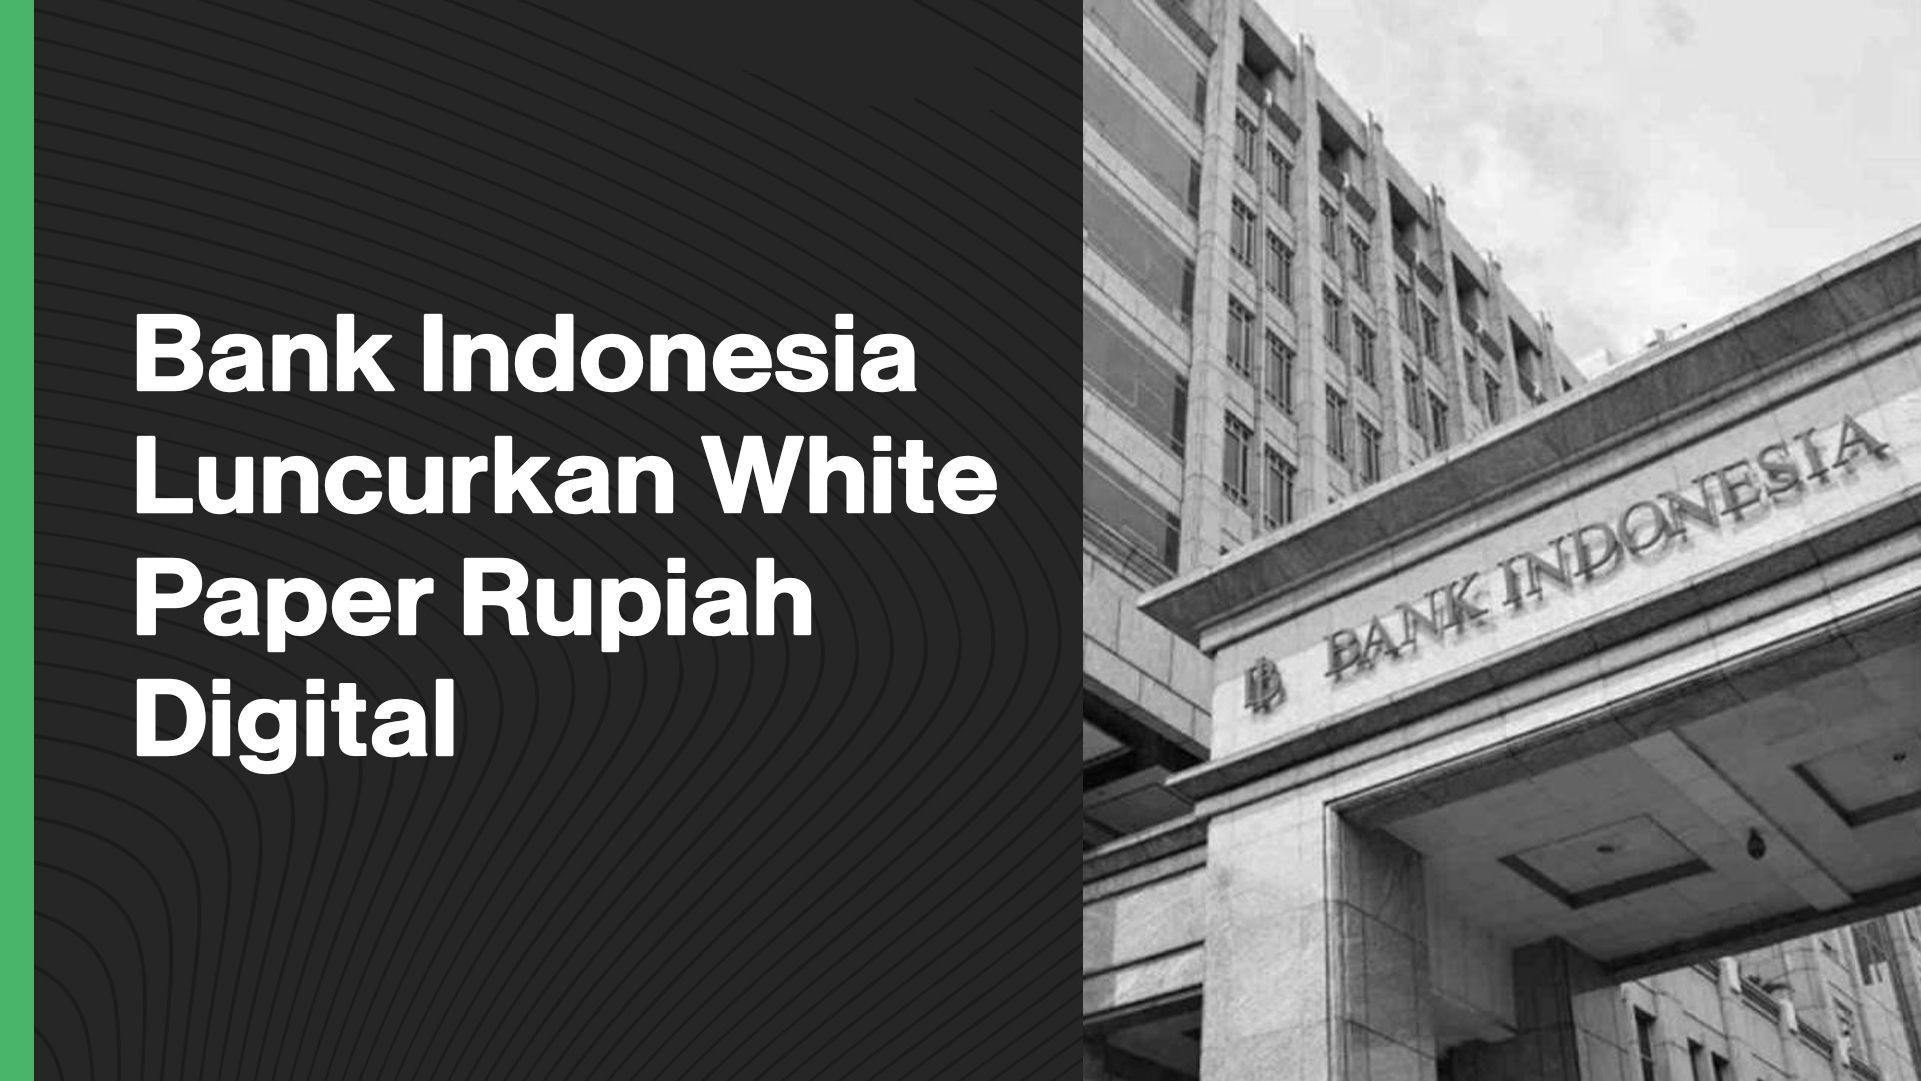 1 Des - Bank Indonesia Luncurkan White Paper Rupiah Digital.jpg